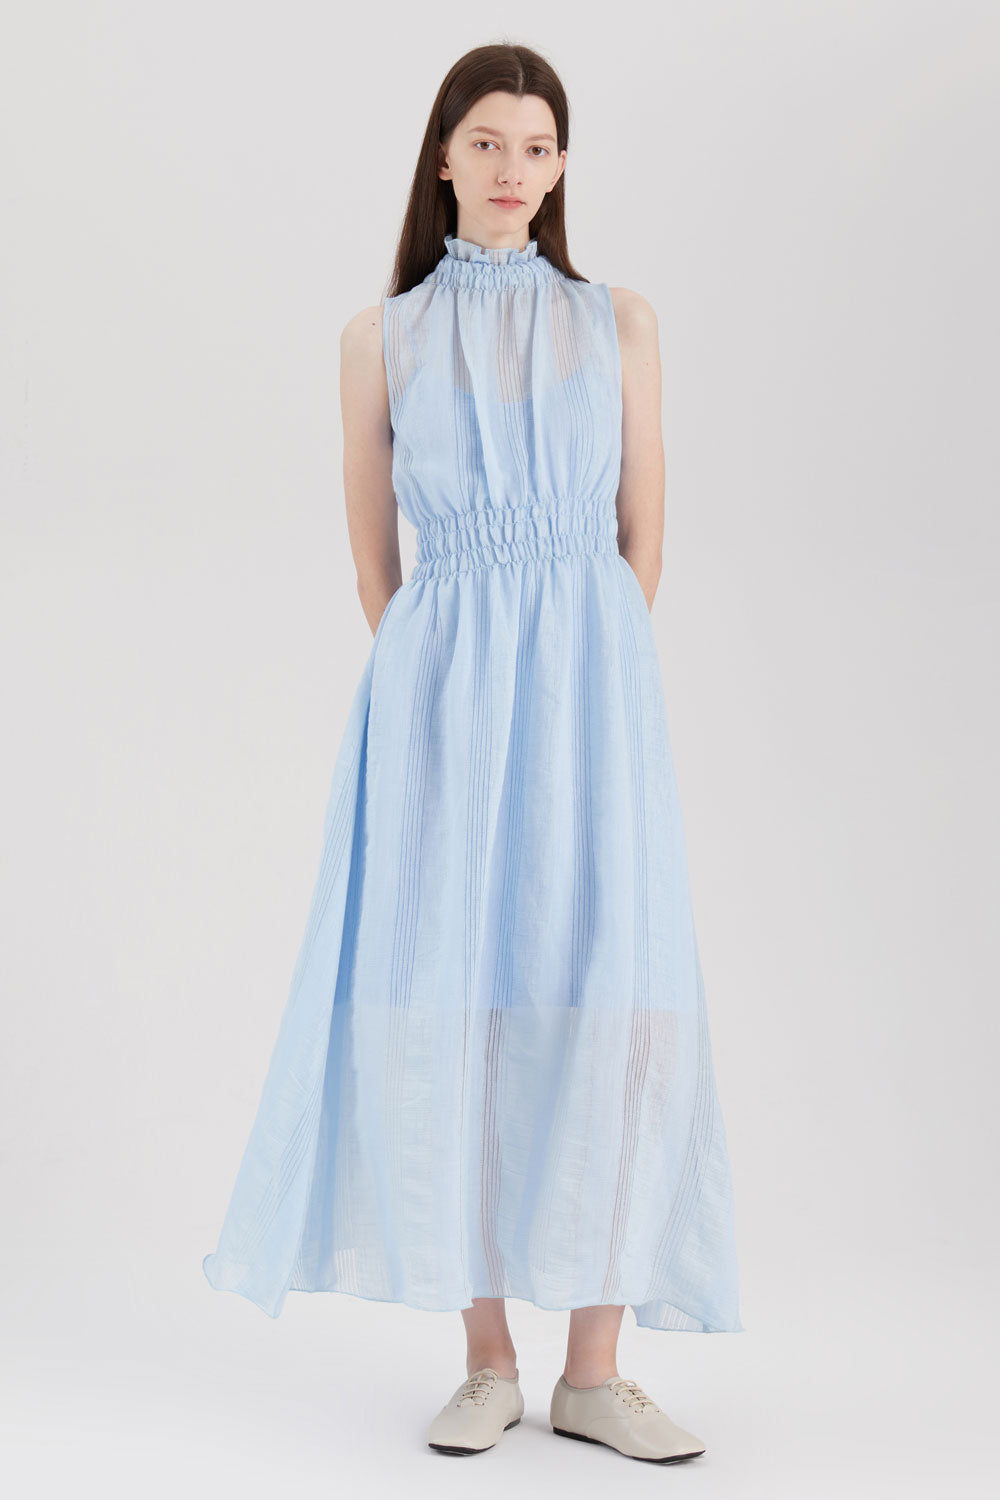 Linen Rayon Sheer Dress